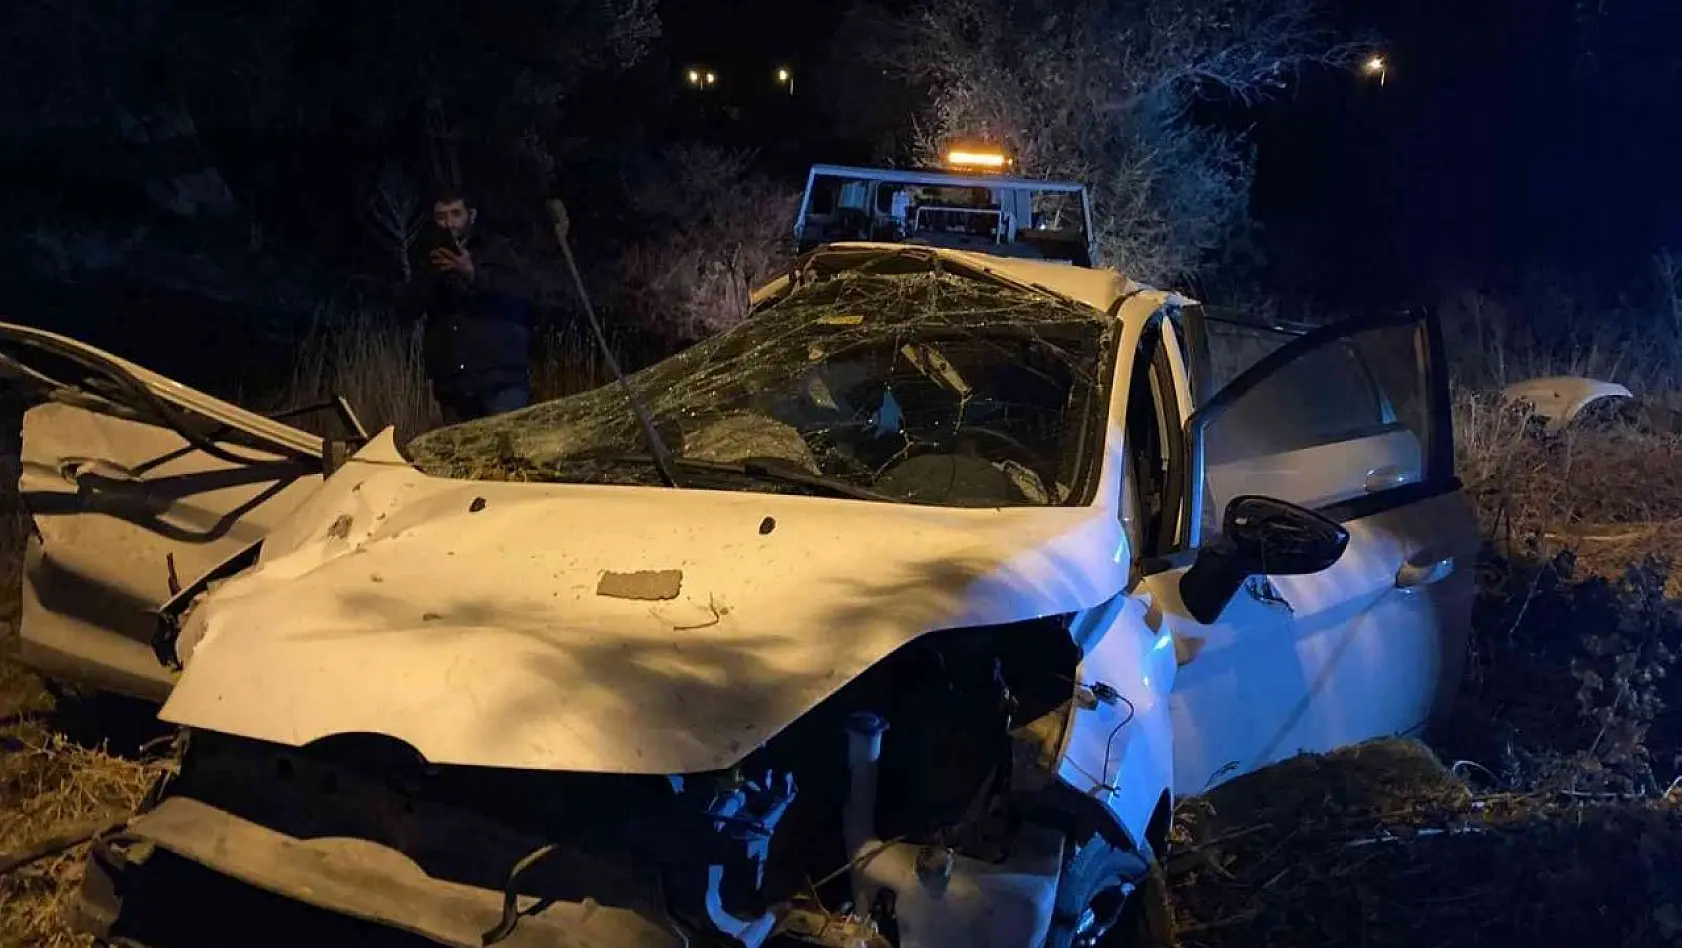 İzmir'de ehliyetsiz gencin kullandığı araç takla attı: 1 ölü, 2 yaralı